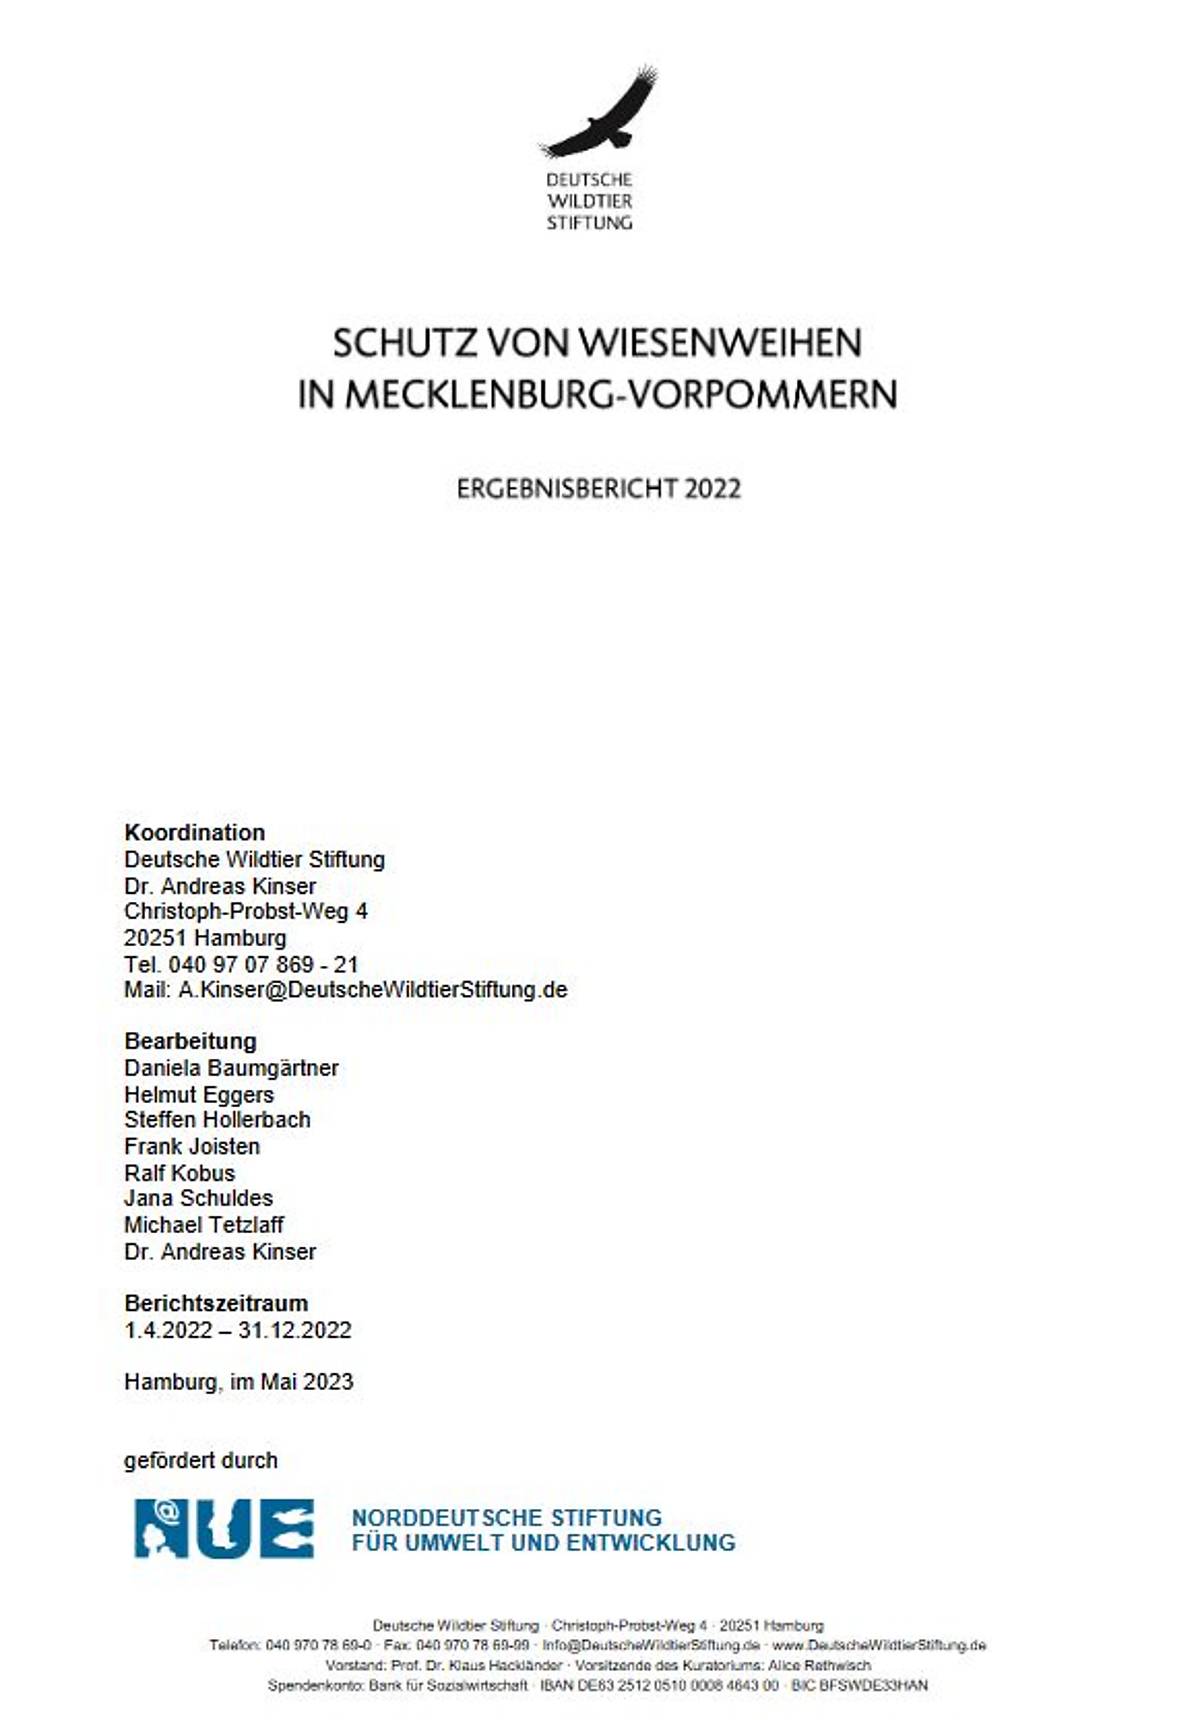 praesentation-status-quo-2021_schutz-wiesenweihe-teaser